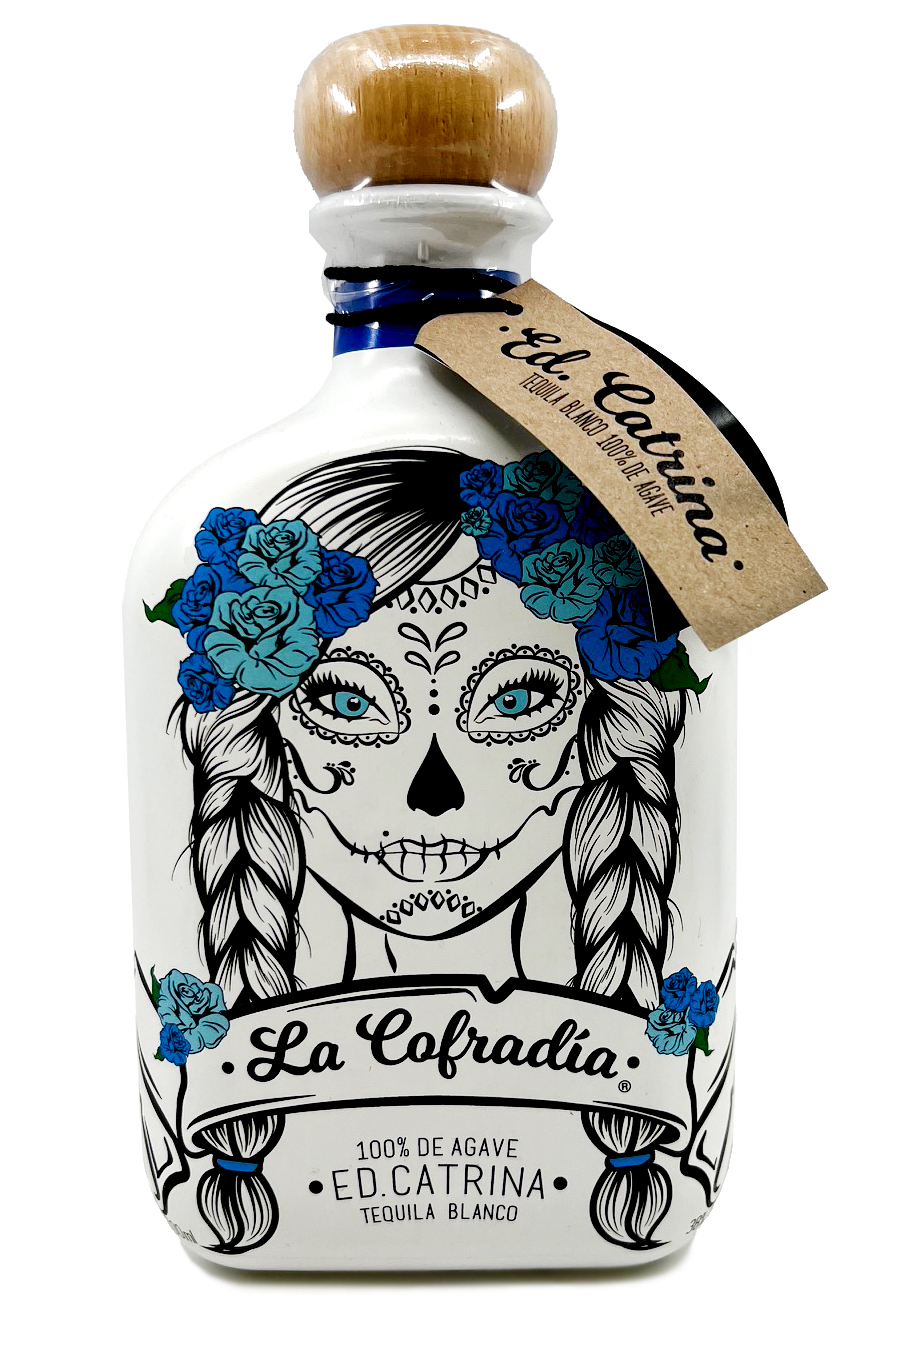 La Cofradia - Tequila Blanco 0,7l 38%vol.